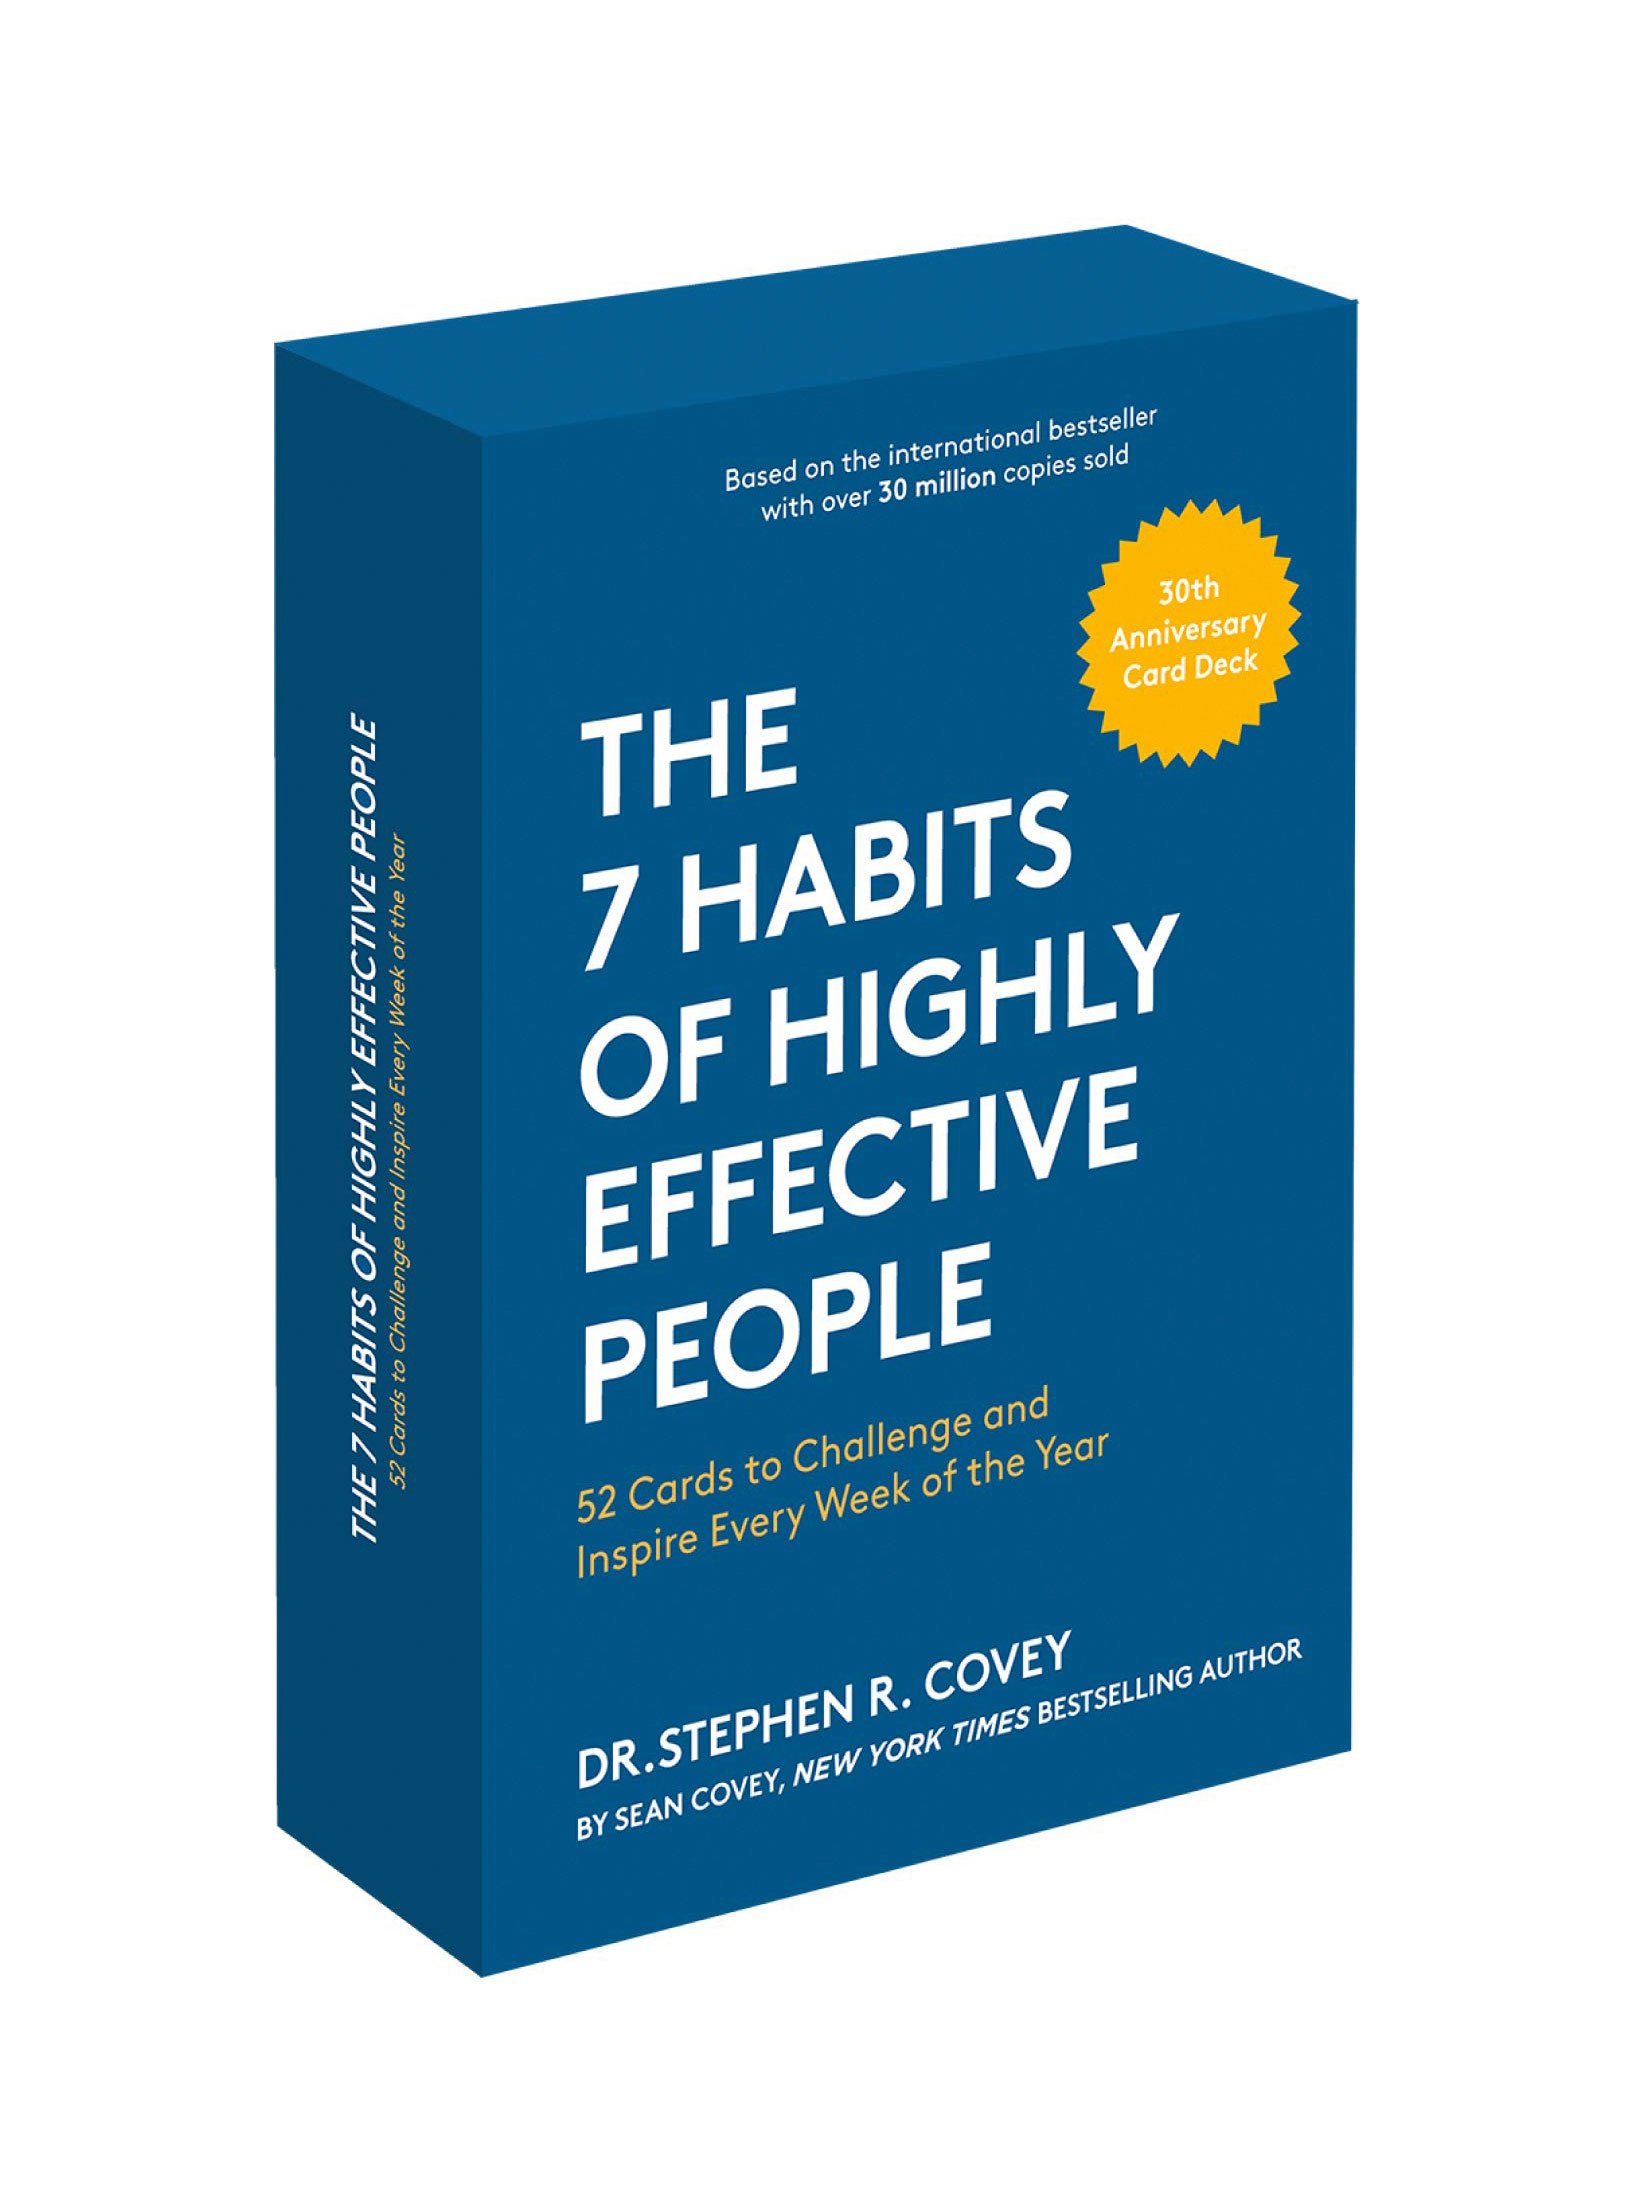 Business-Lesung: Wenn ich lese, dann gerne eine Business-Lektüre. Da wir gerade eine neue Firma zum Thema Leadership gründen, kann ich »The 7 habits of highly effective people« sehr empfehlen.